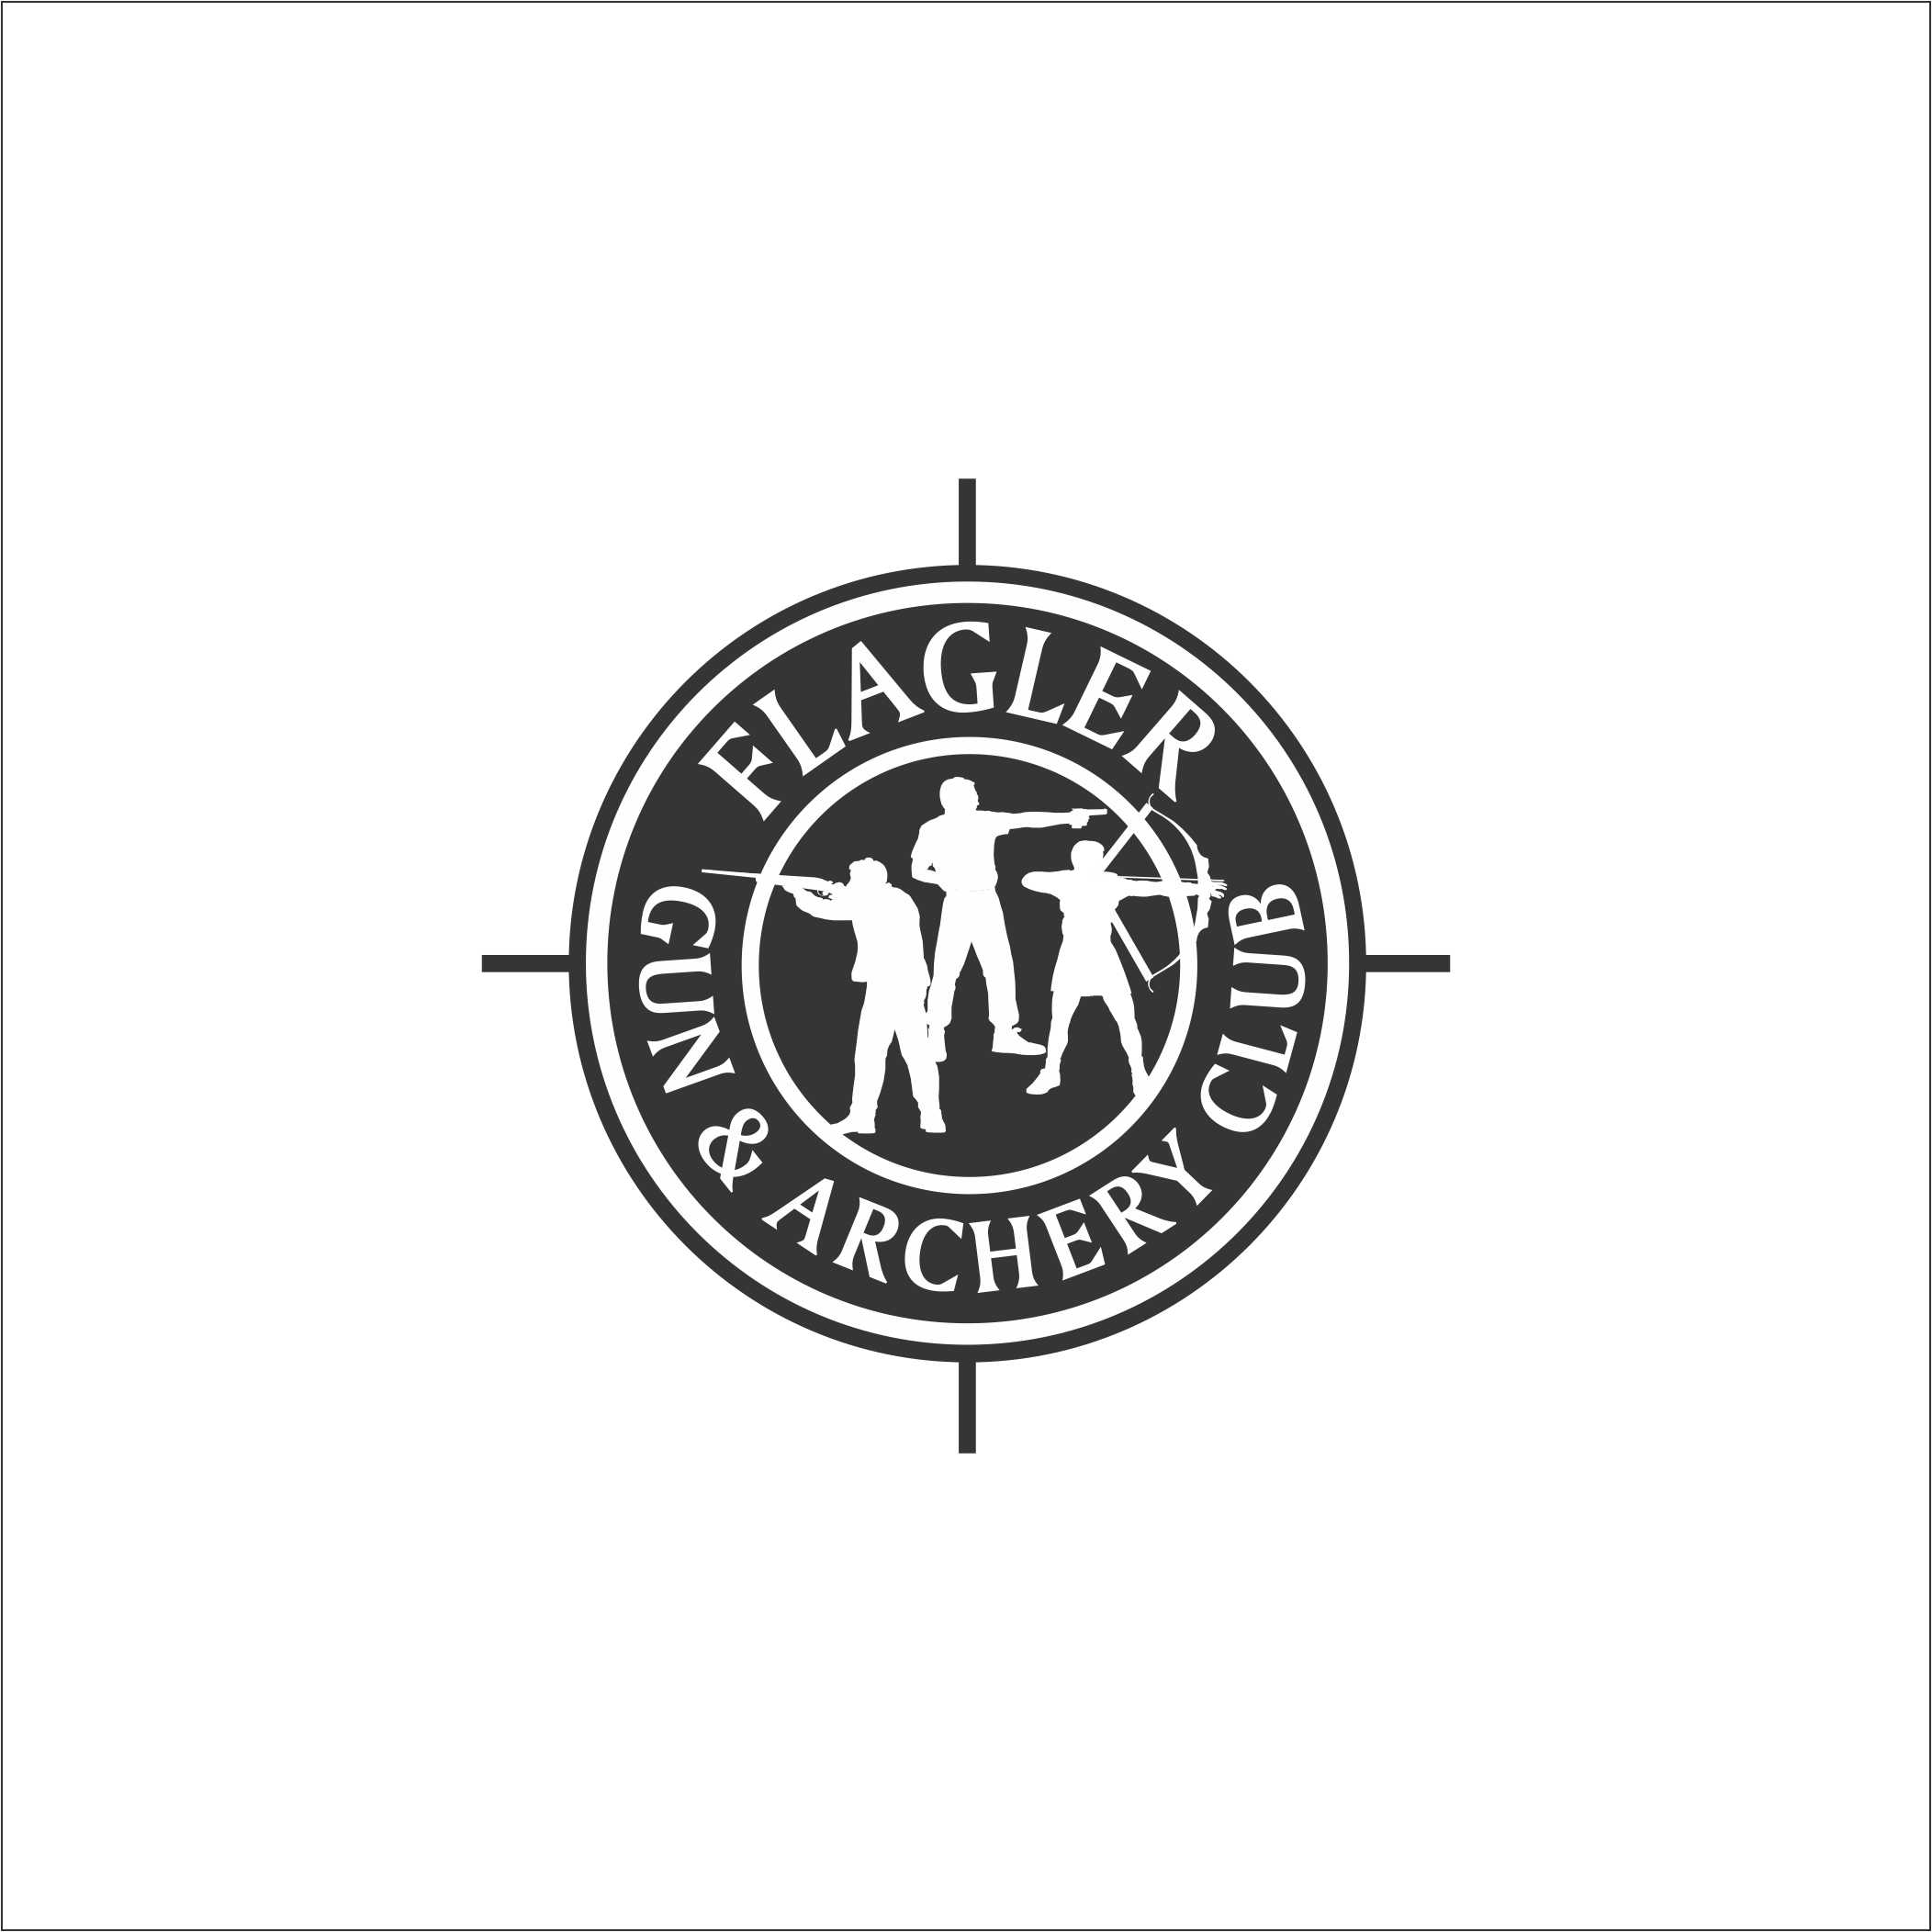 Flagler Gun & Archery Club